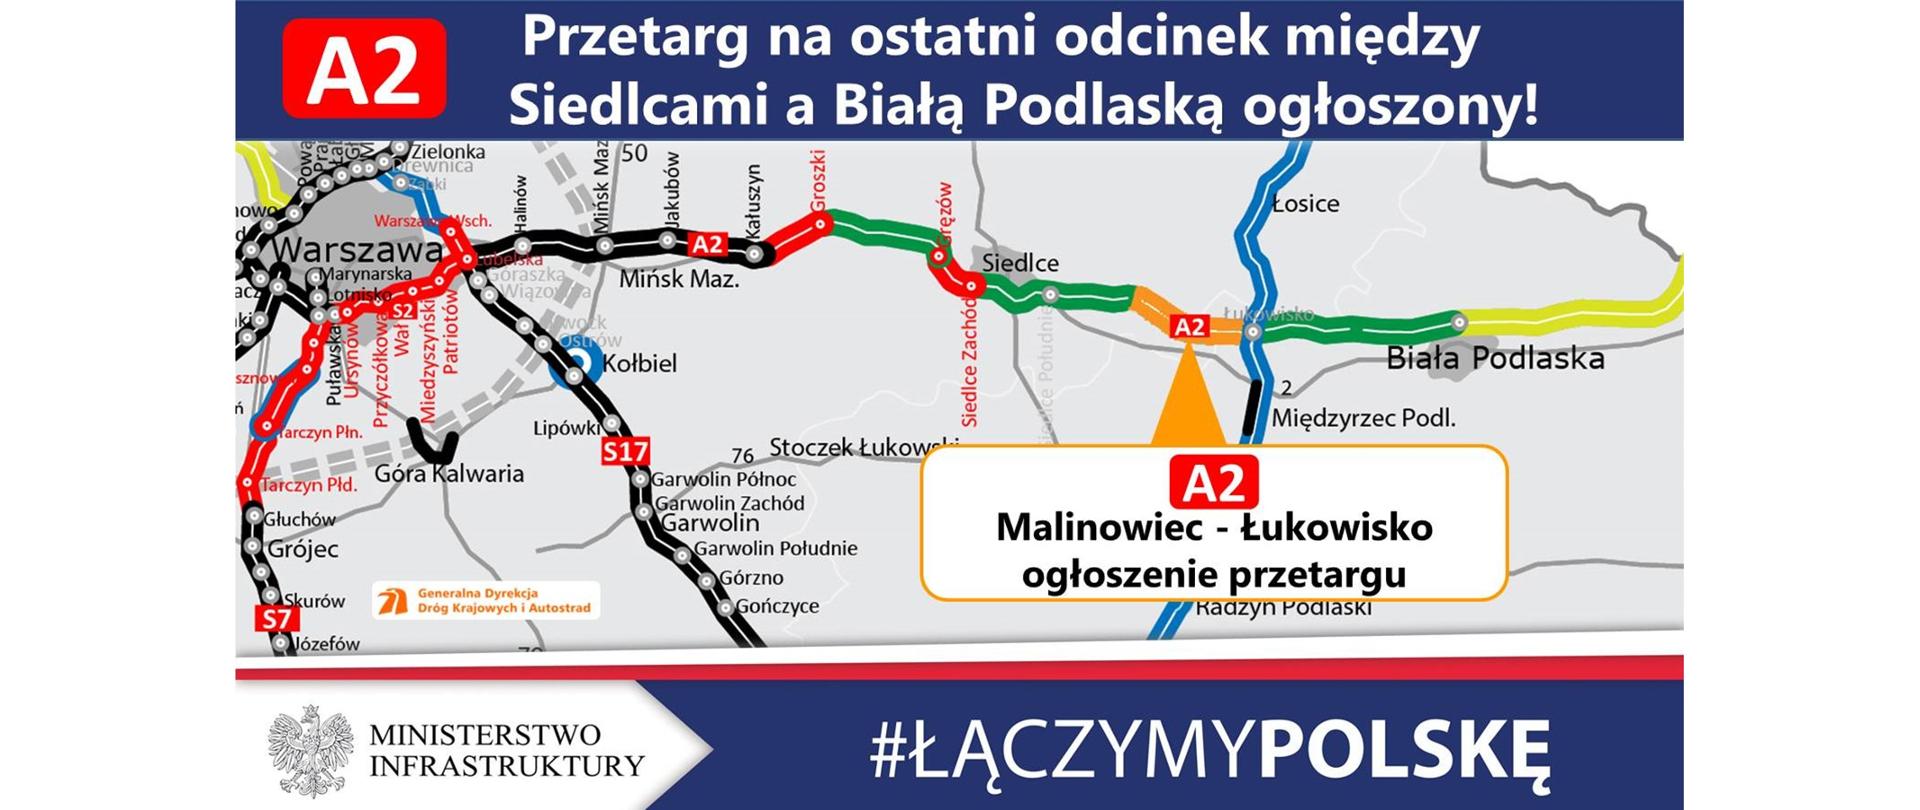 Przetarg na realizację A2 Malinowiec - Łukowisko - infografika